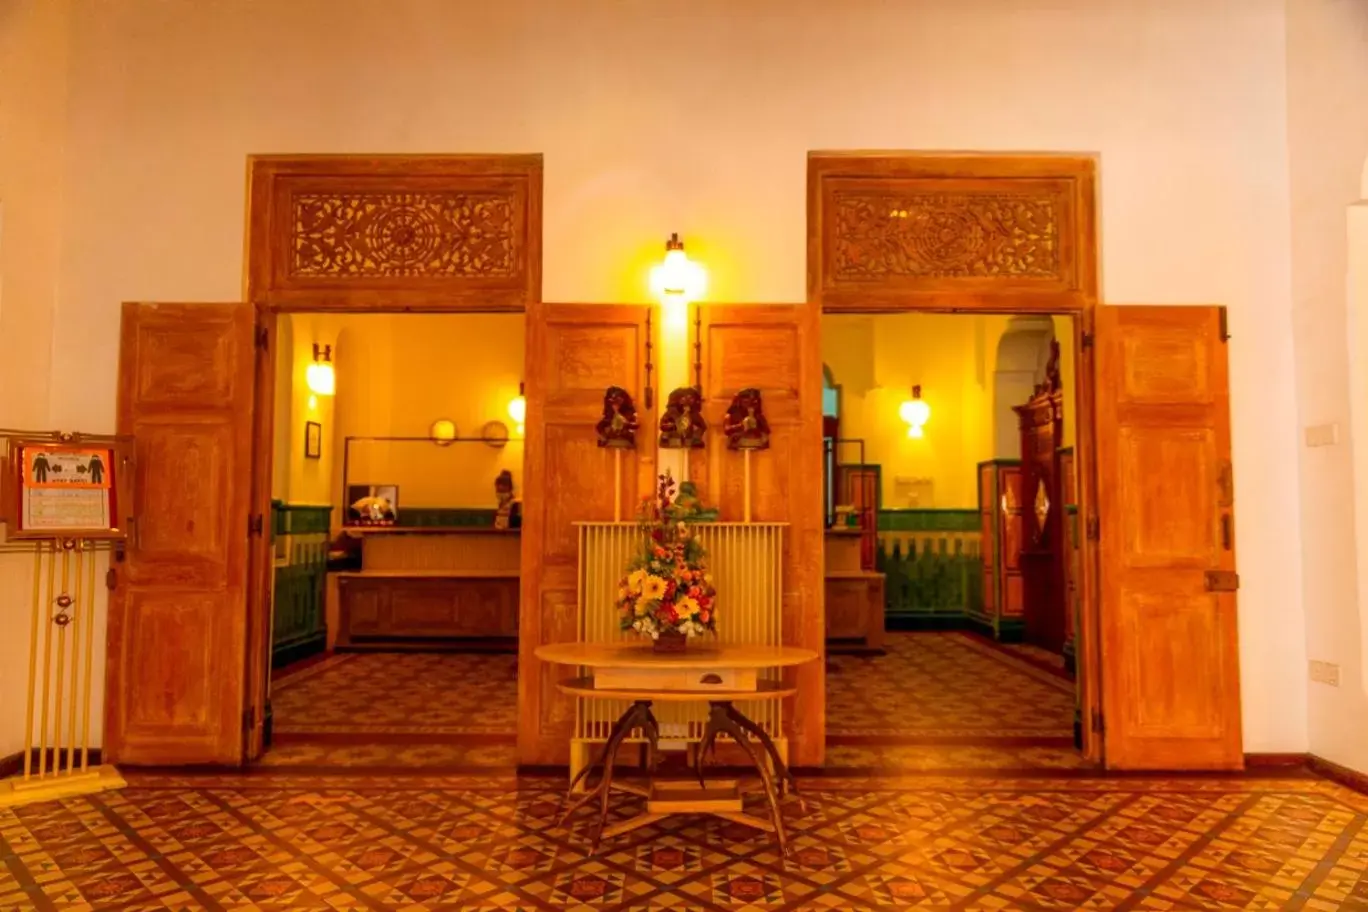 Lobby or reception in Thilanka Hotel